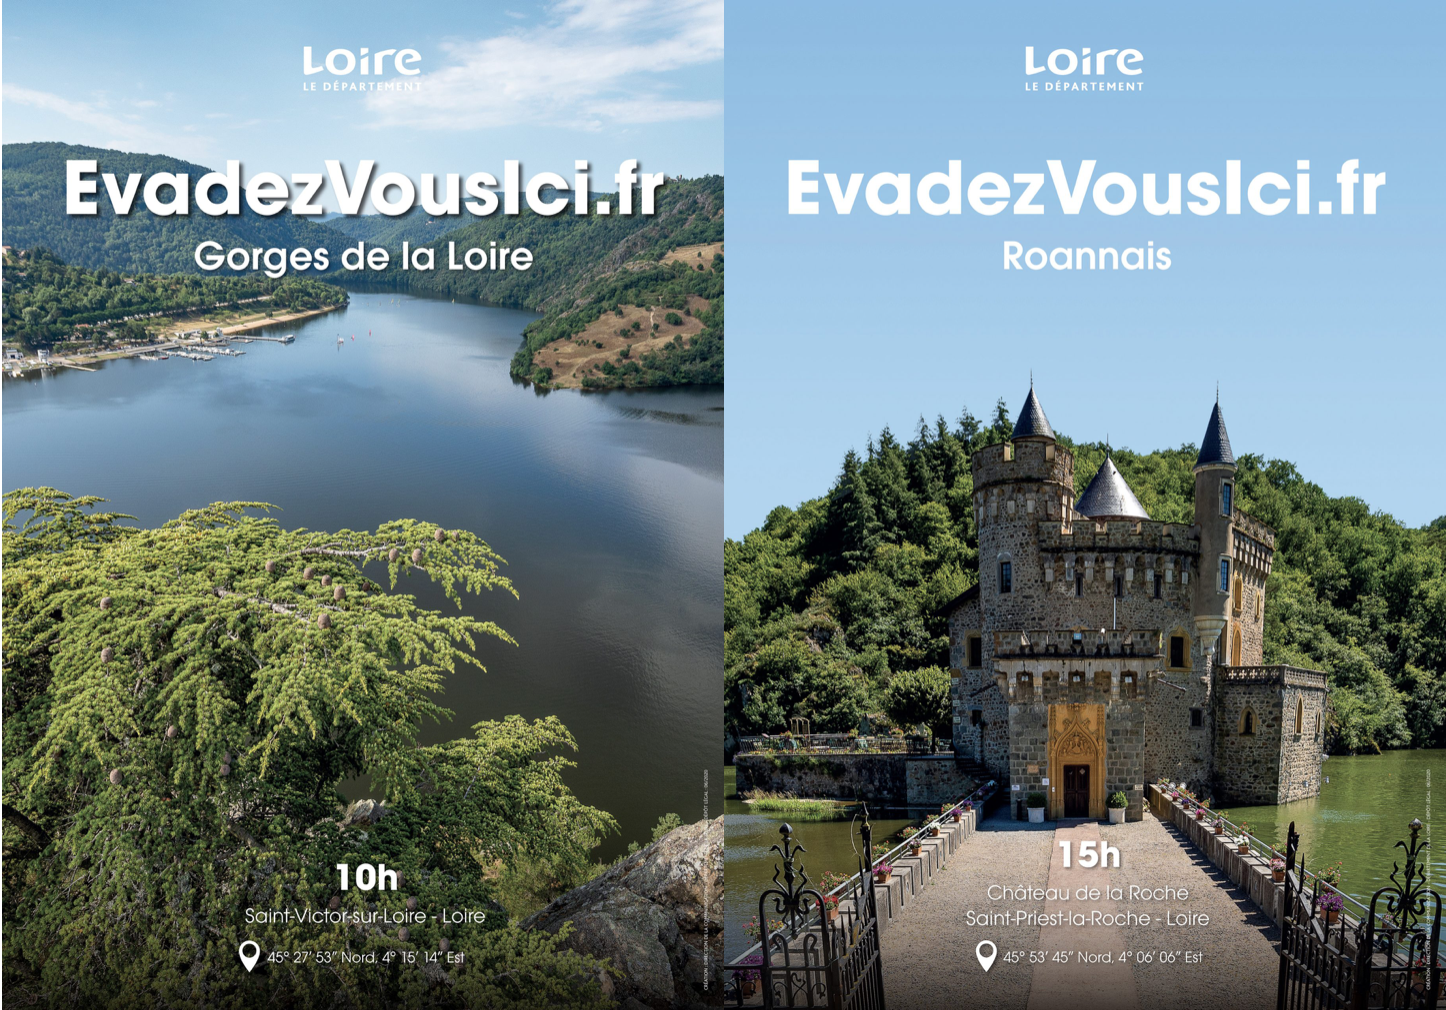 « Évadez-vous ici&nbsp;», le nouveau slogan touristique de la Loire